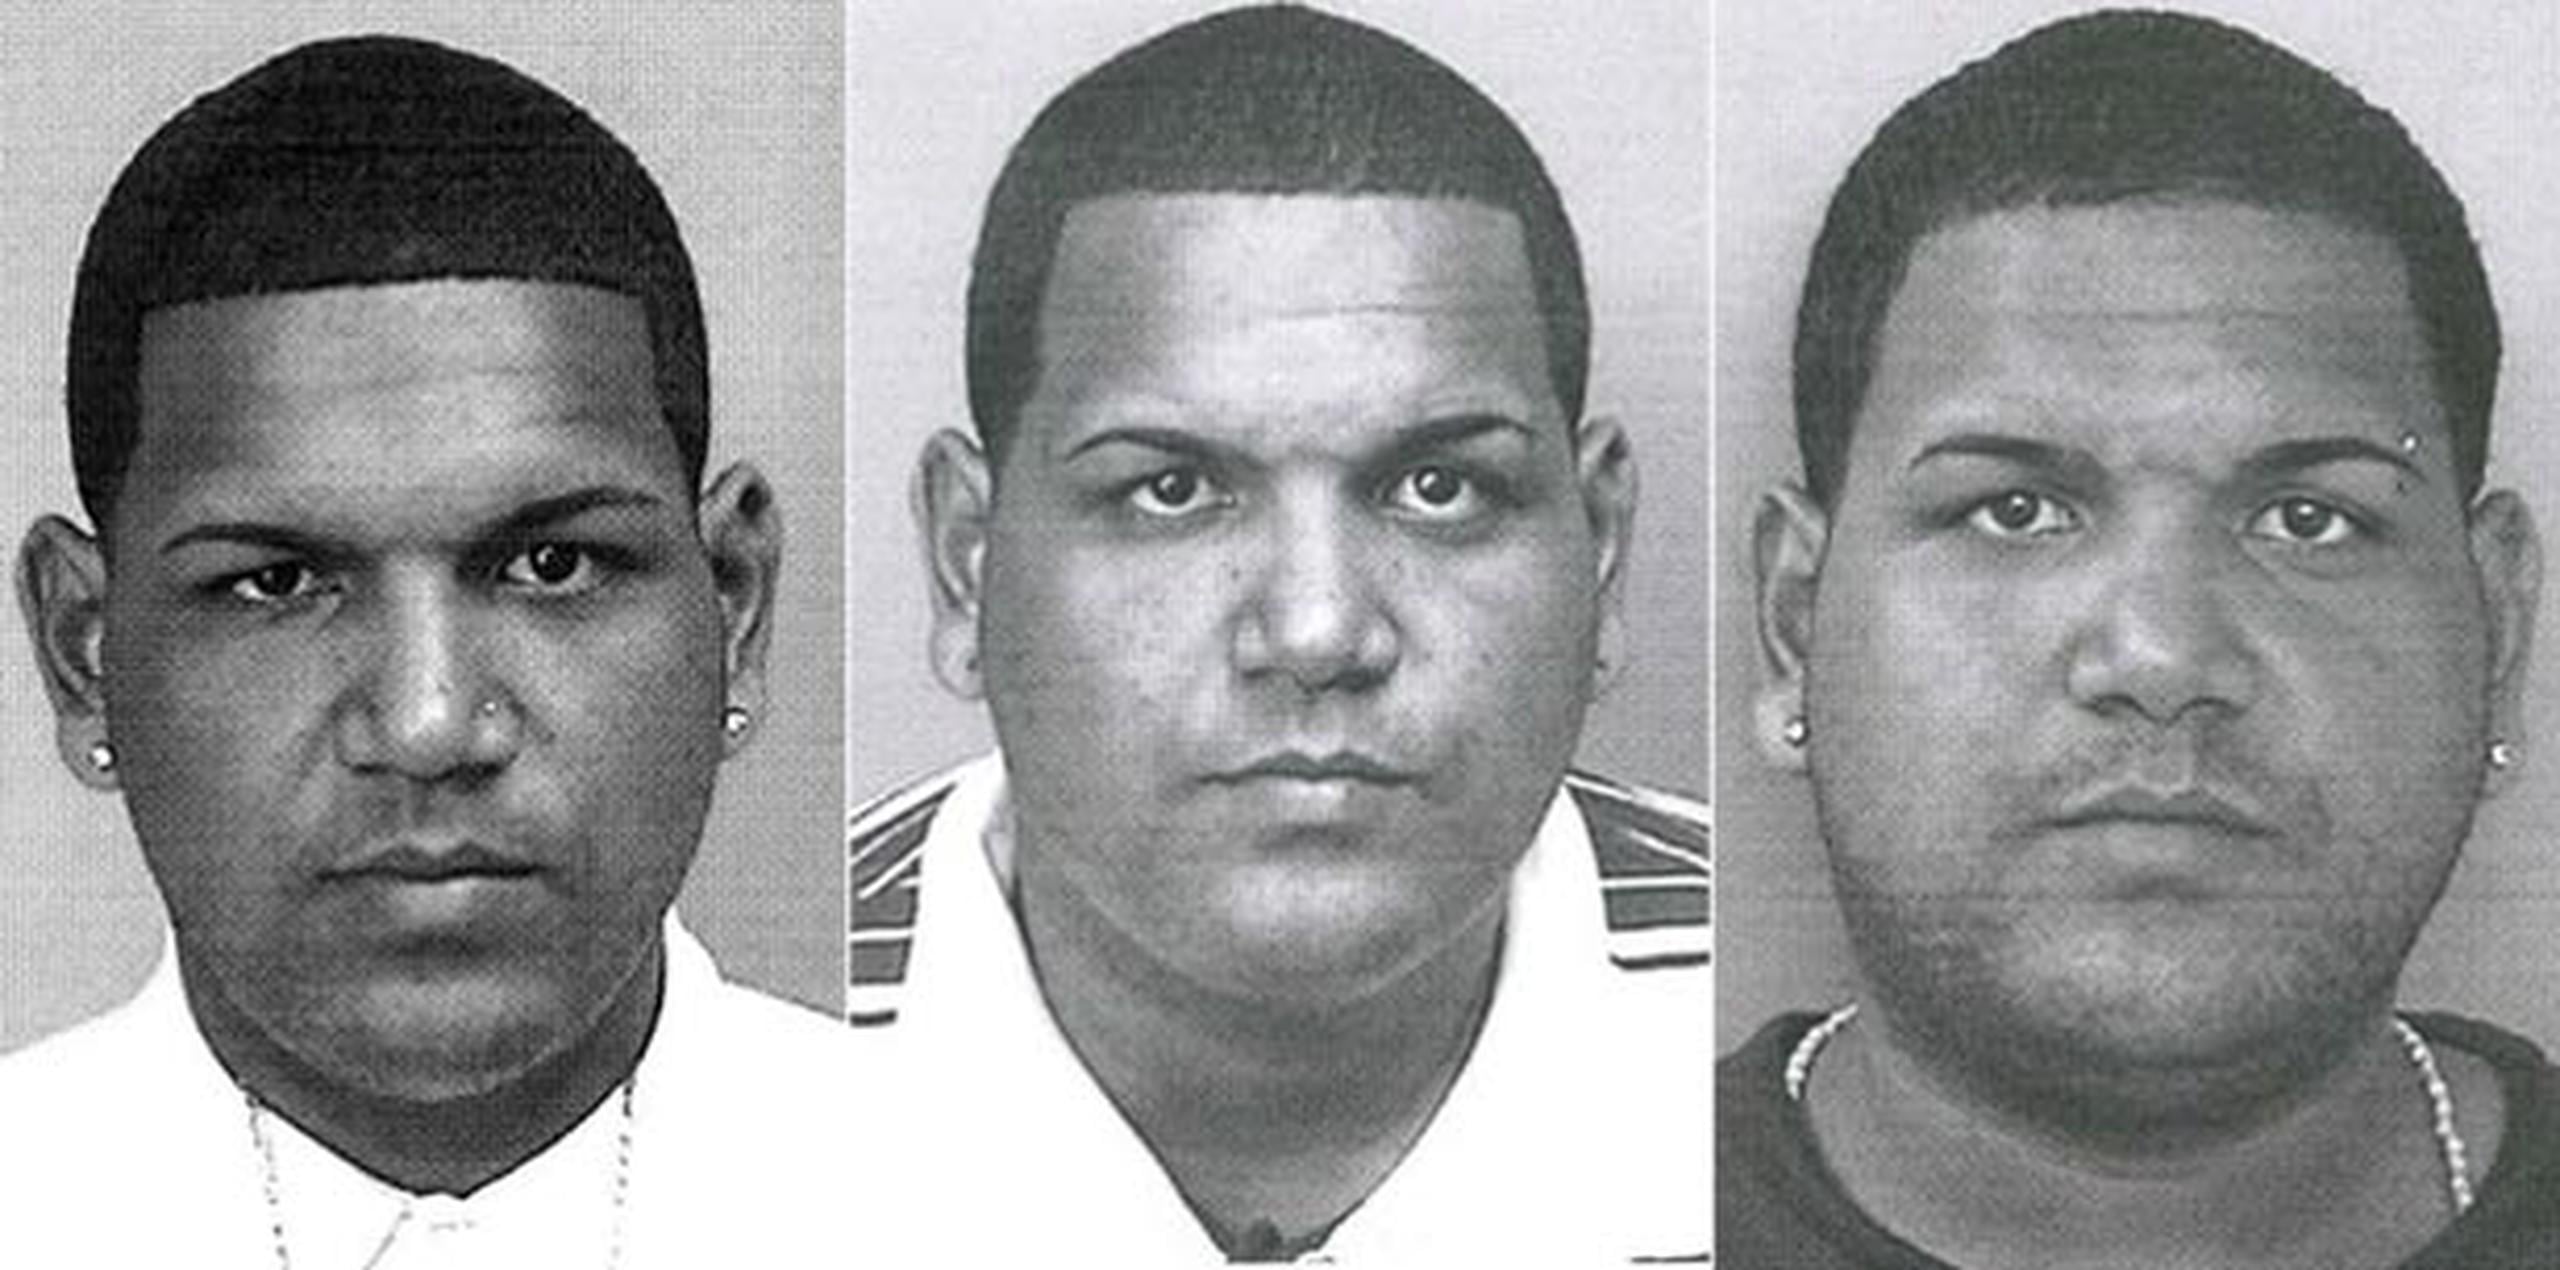 Desde el año 2007, la Policía de Puerto Rico cuenta con varios fotos de los fichajes por diferentes delitos de Alberto García Merced, entre ellos Ley 54, Ley de Armas y Drogas. Esta vez  todavía no ha sido acusado por la agresión de Sherly Ann. (Suministradas)